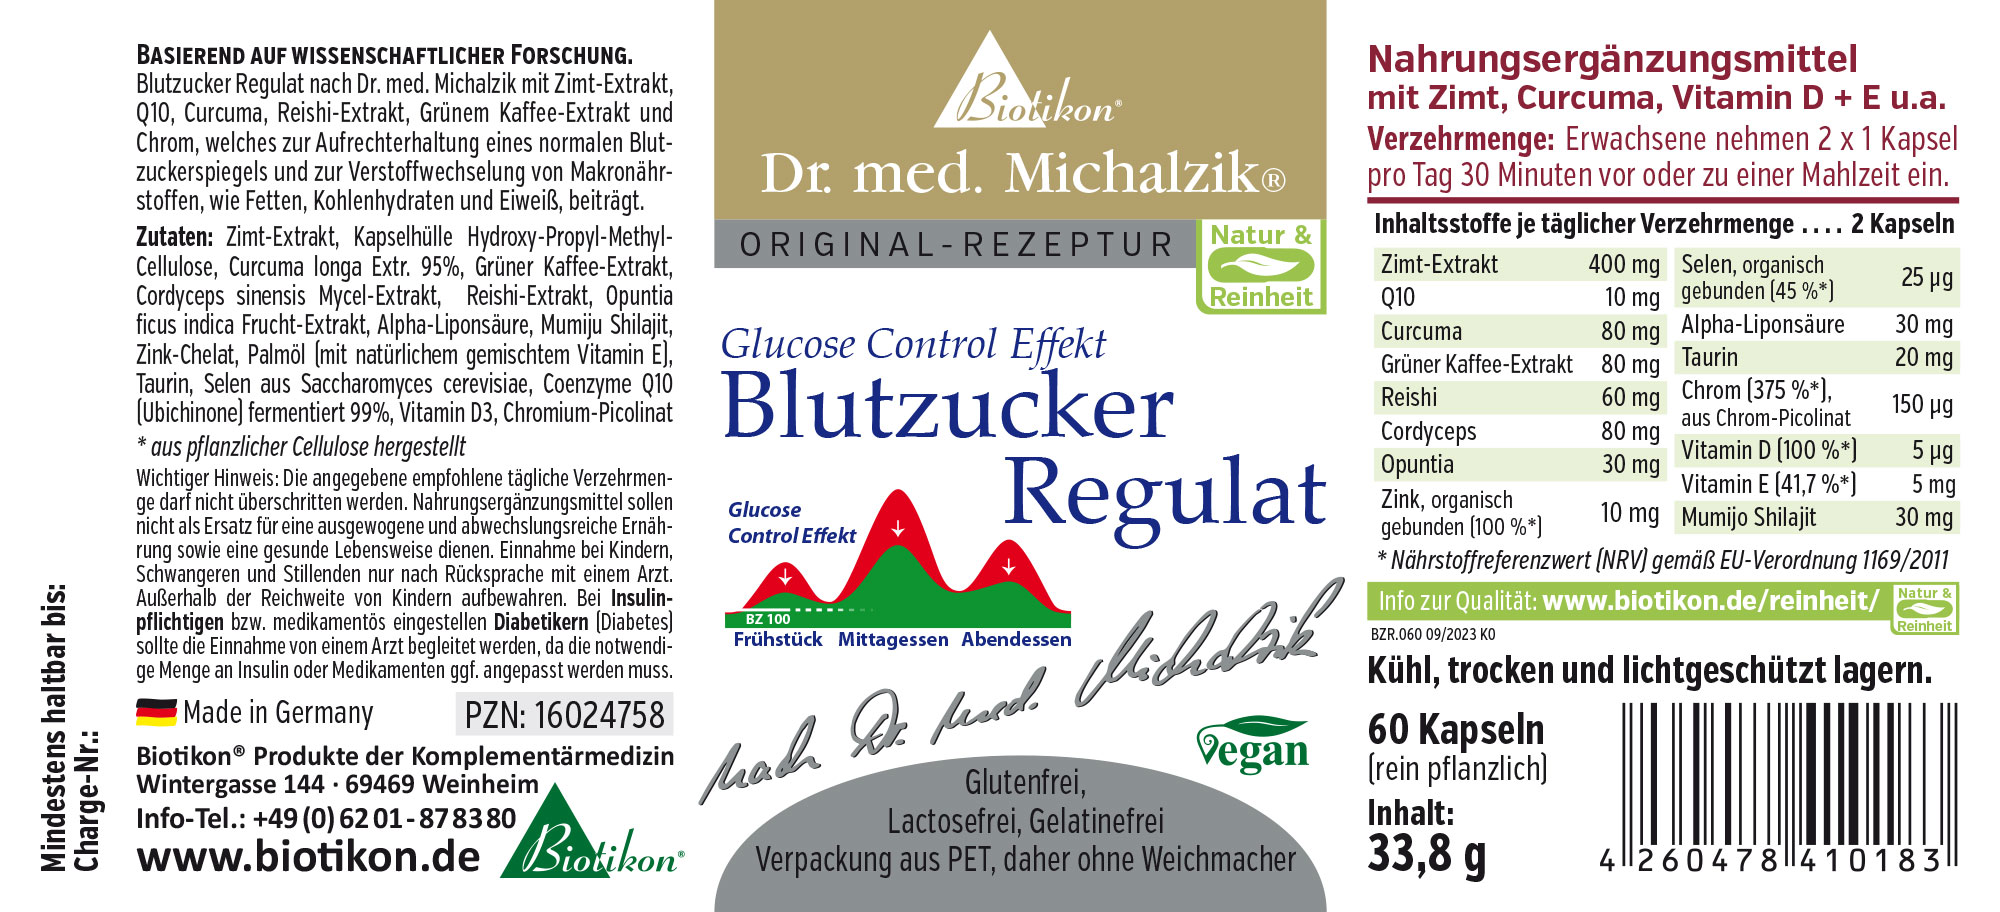 Regolatore della Glicemia di Dr. med. Michalzik